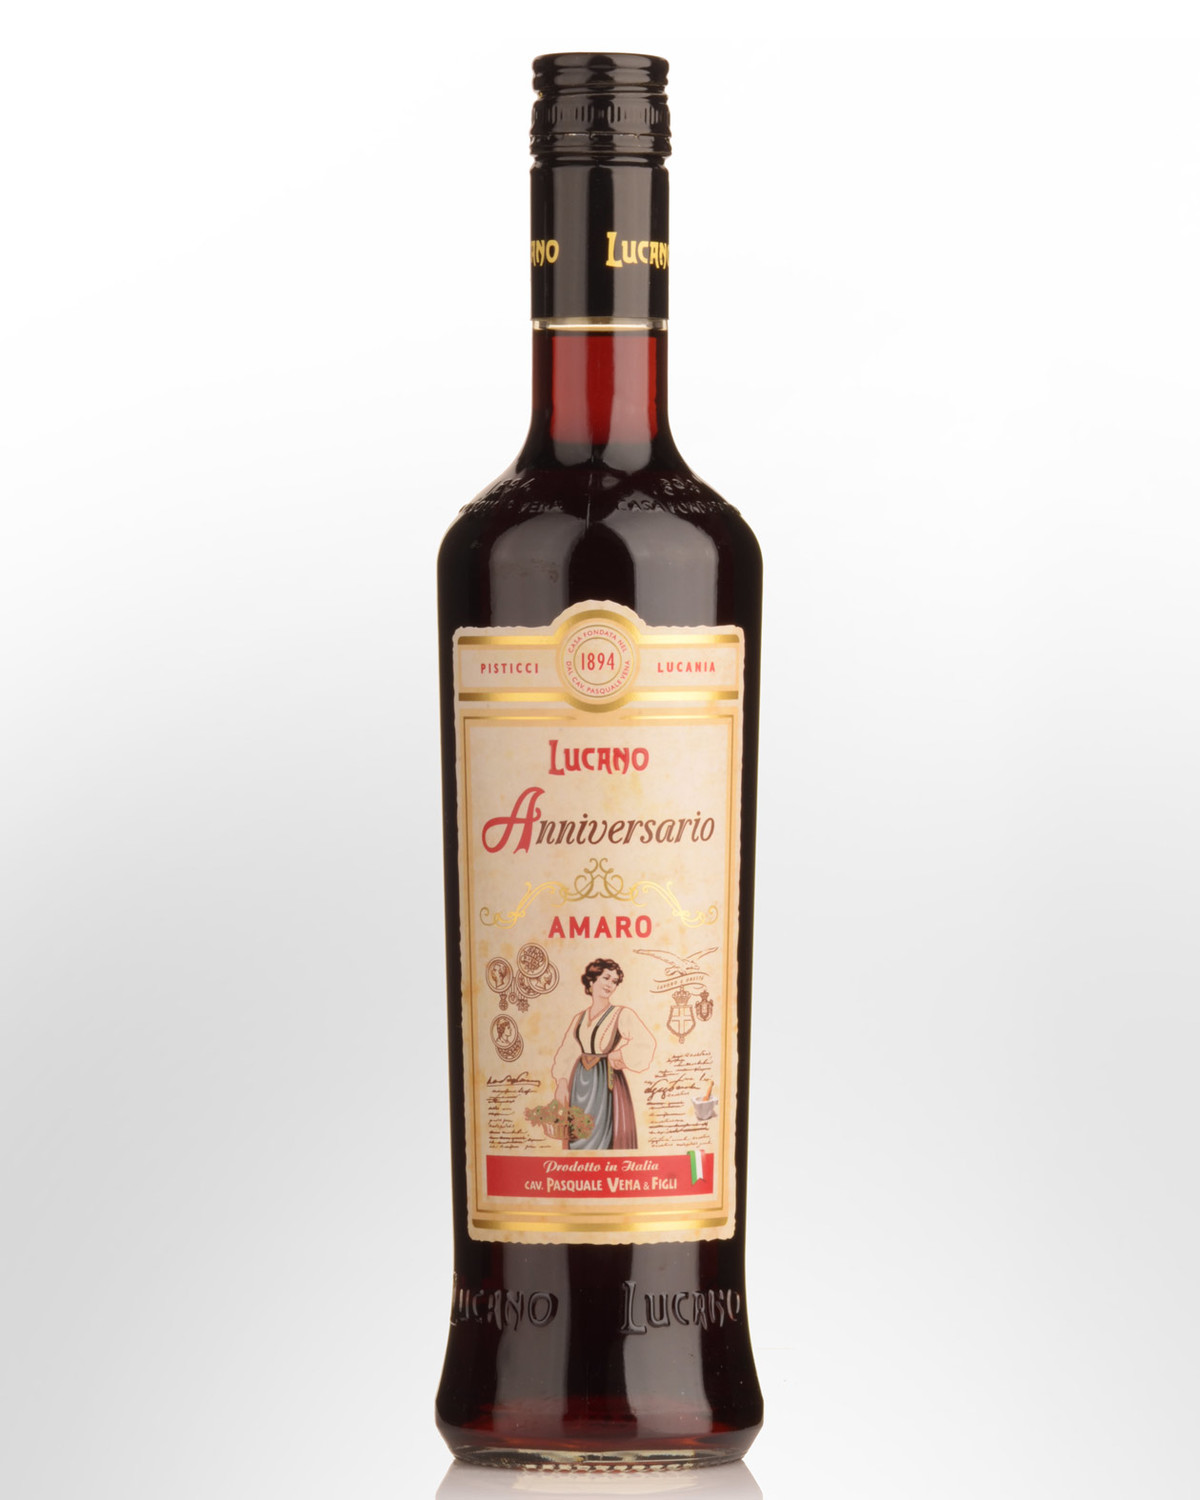 Caffo Vecchio Amaro del Capo Riserva Digestif Liqueur (700ml